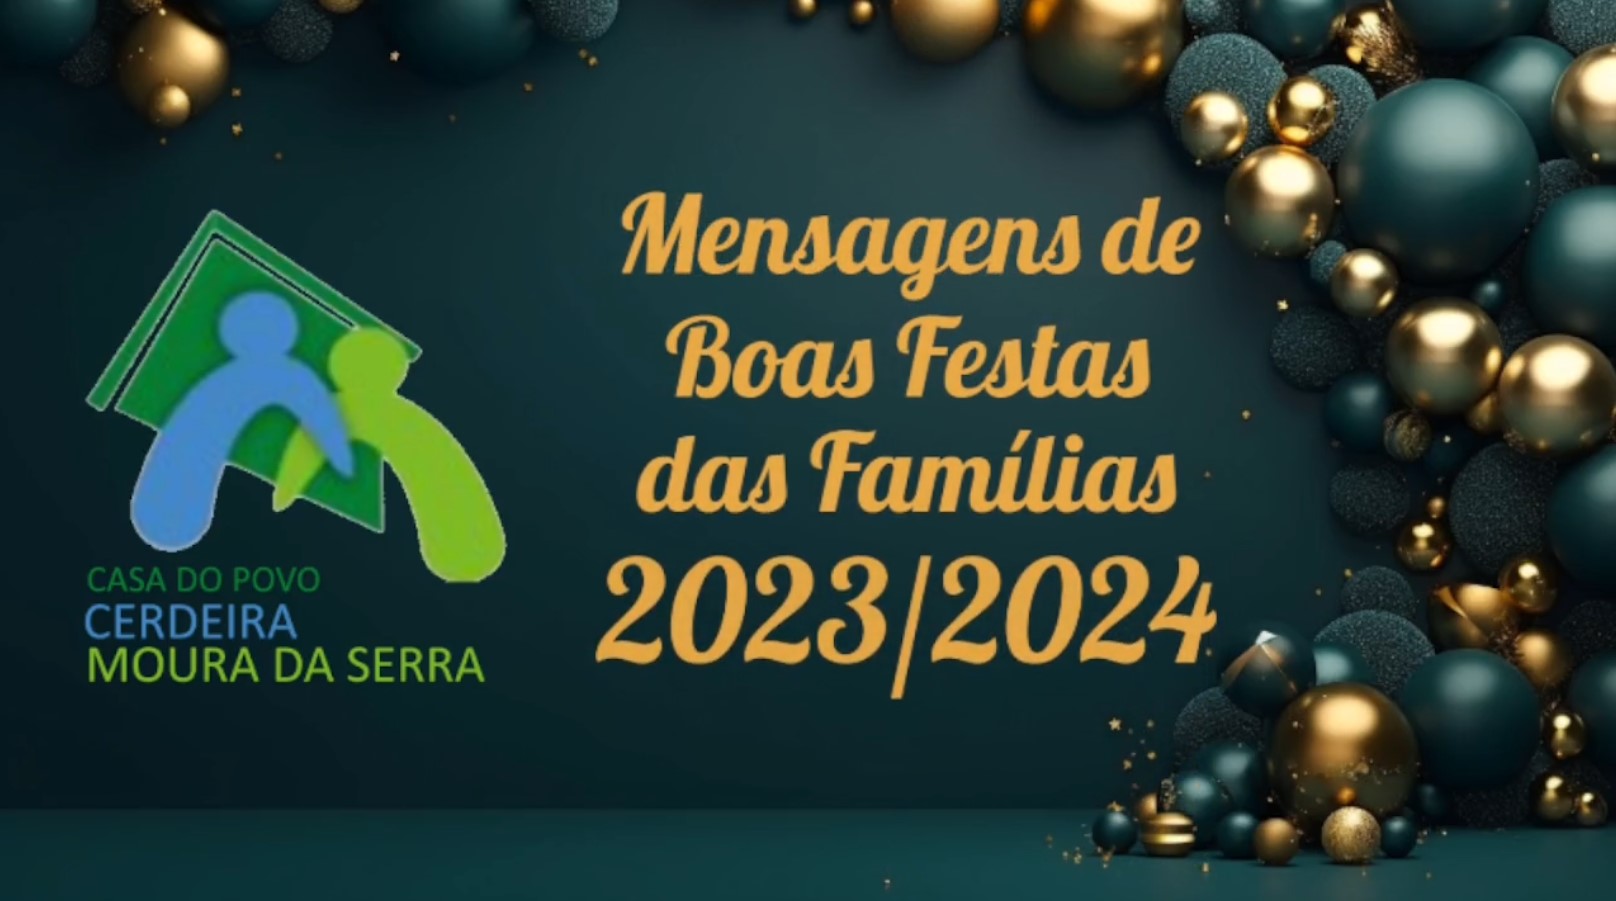 Casa do Povo de Cerdeira e Moura da Serra, I.P.S.S. – Vídeo de Boas Festas 2023/2024 das Famílias